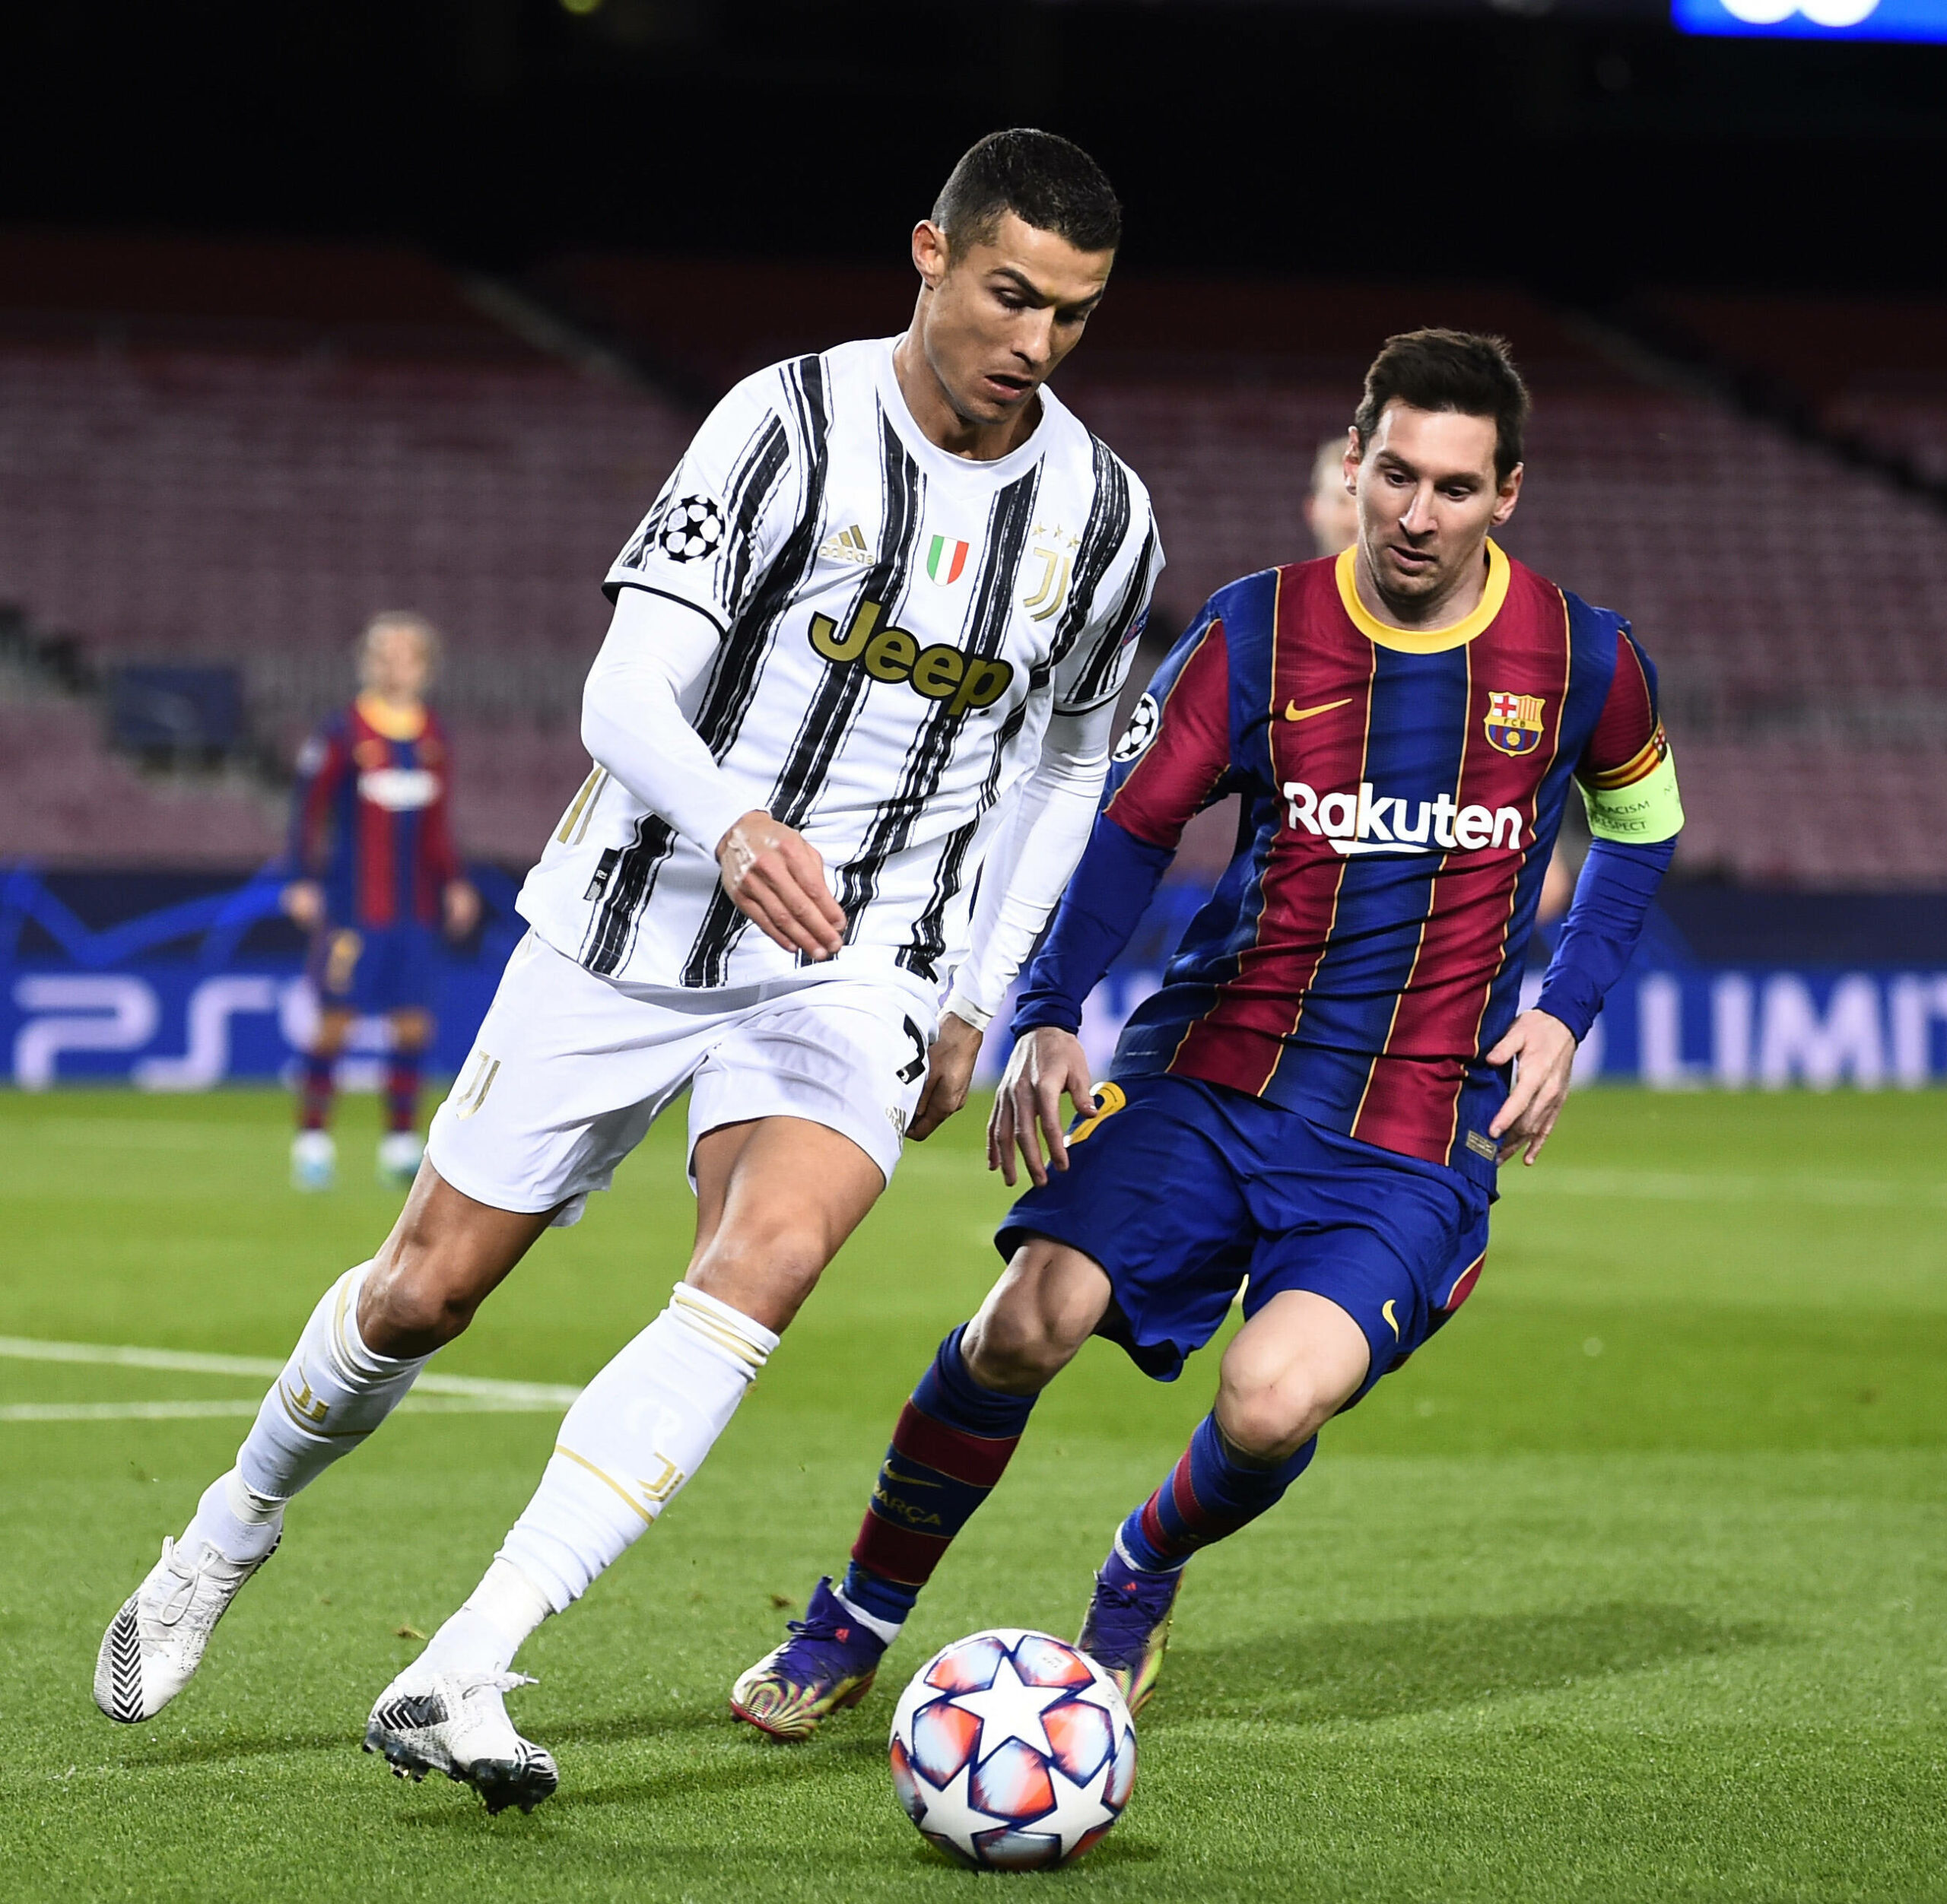 Letztmalig trafen sich Ronaldo und Messi in der Champions League im Dezember 2020.